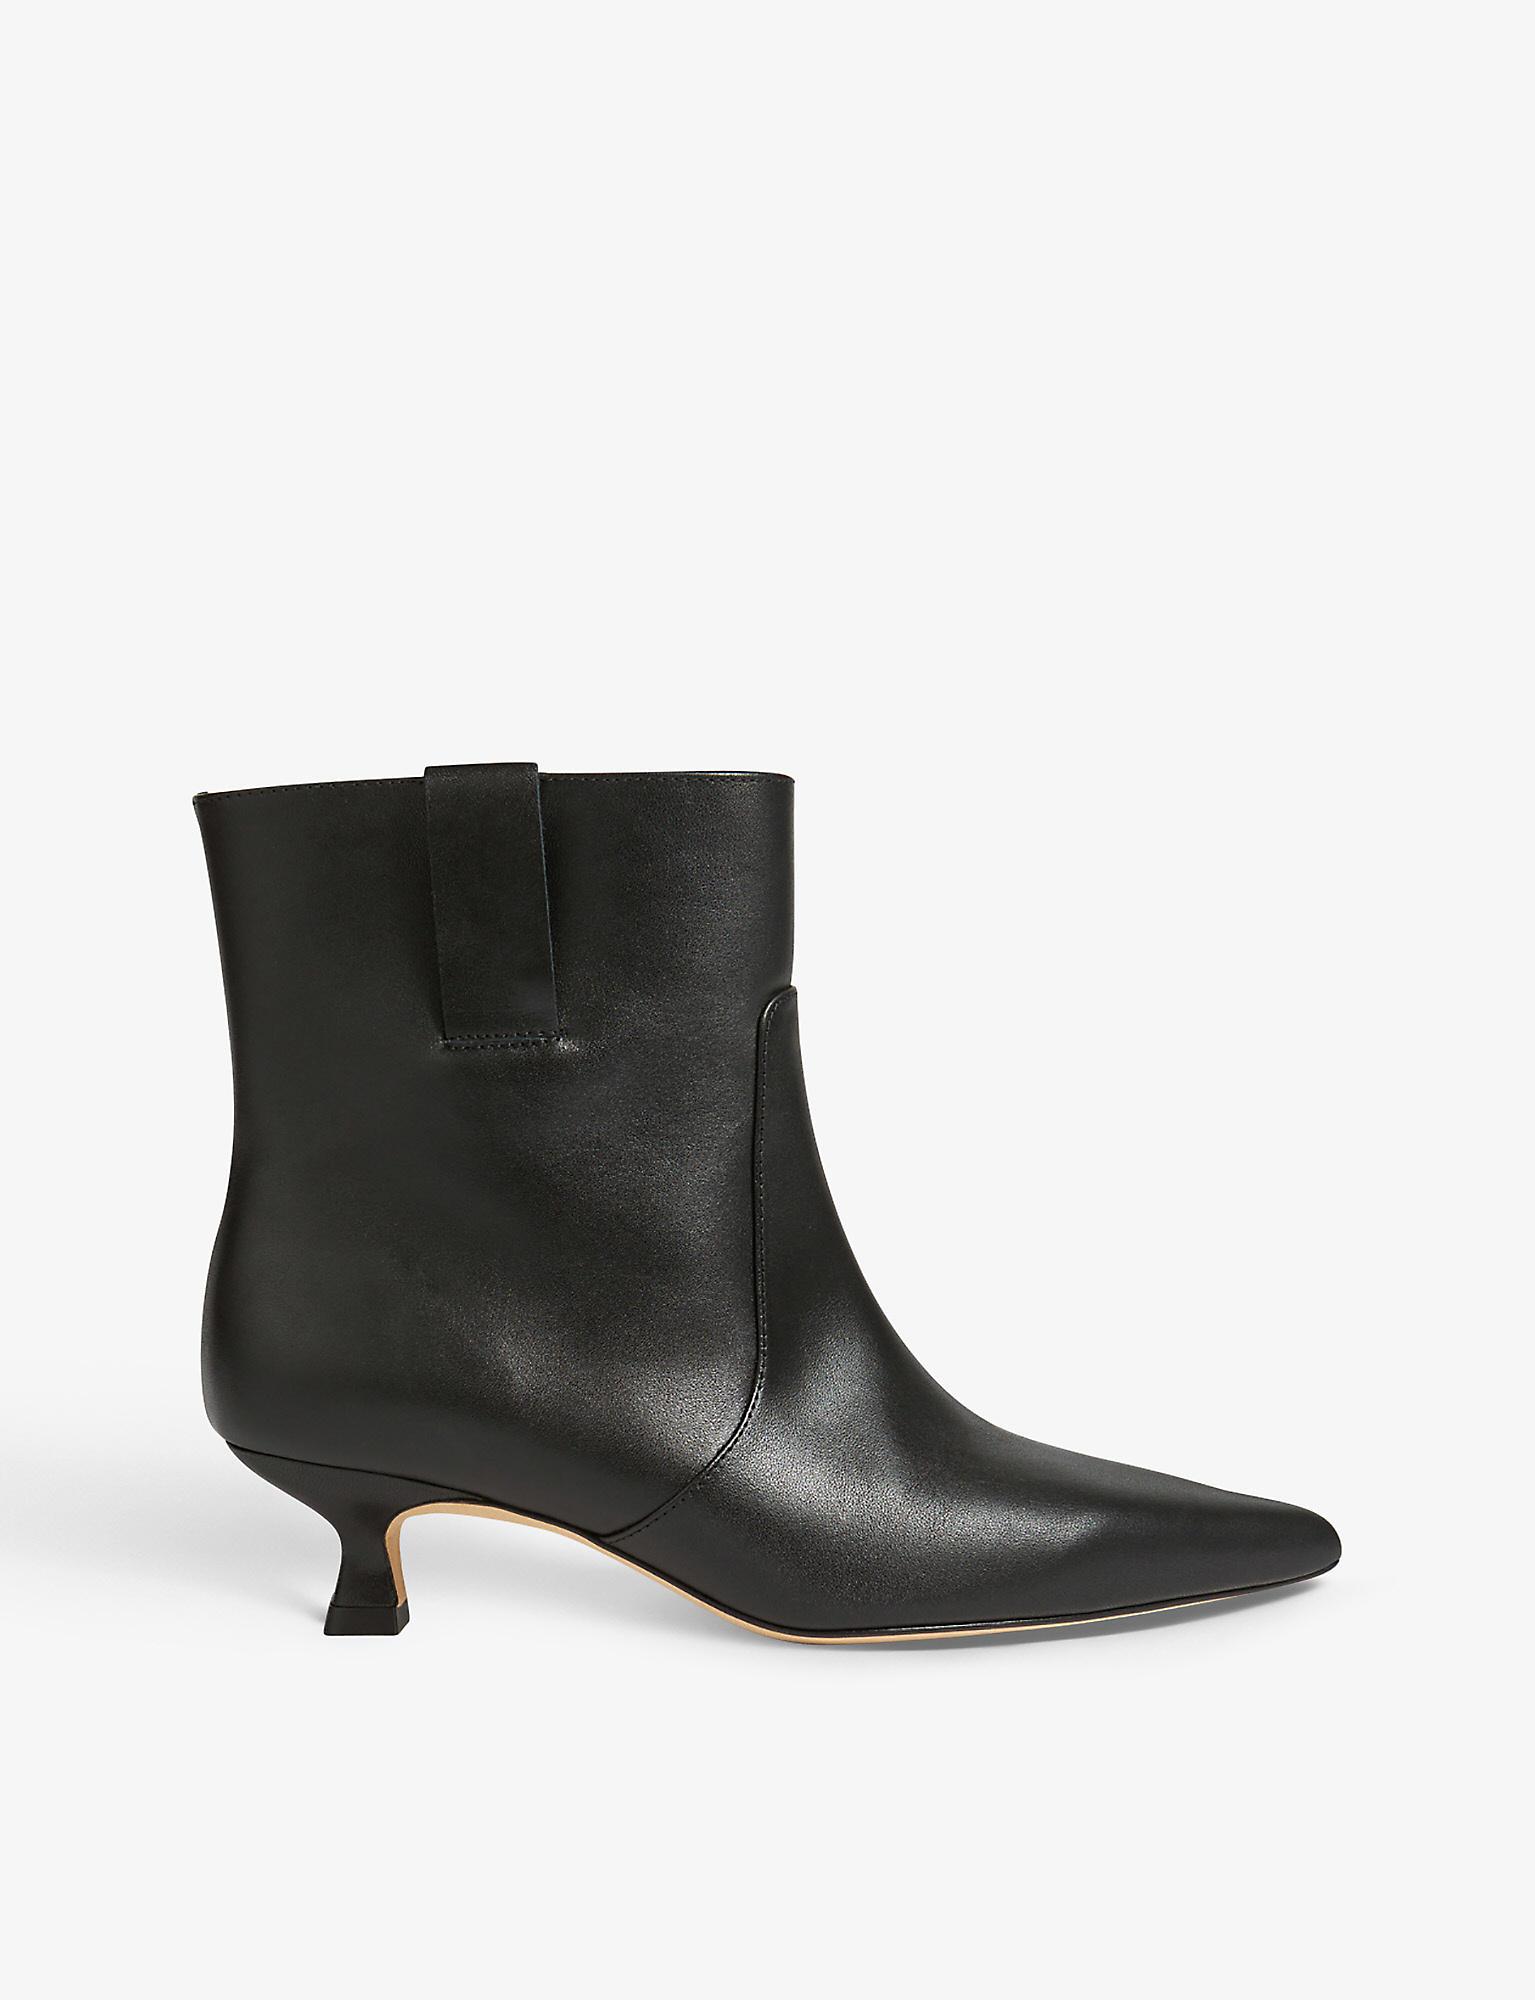 LK Bennett Rowan Western-style Leather Ankle Boots in Black | Lyst